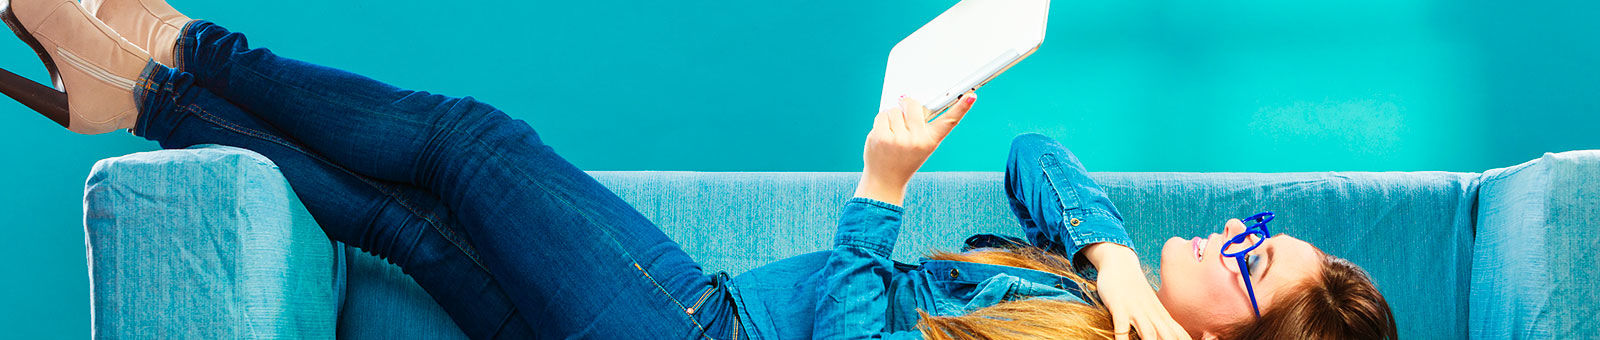 Jeune fille lisant via sa tablette numérique, alongée dans son canapé.